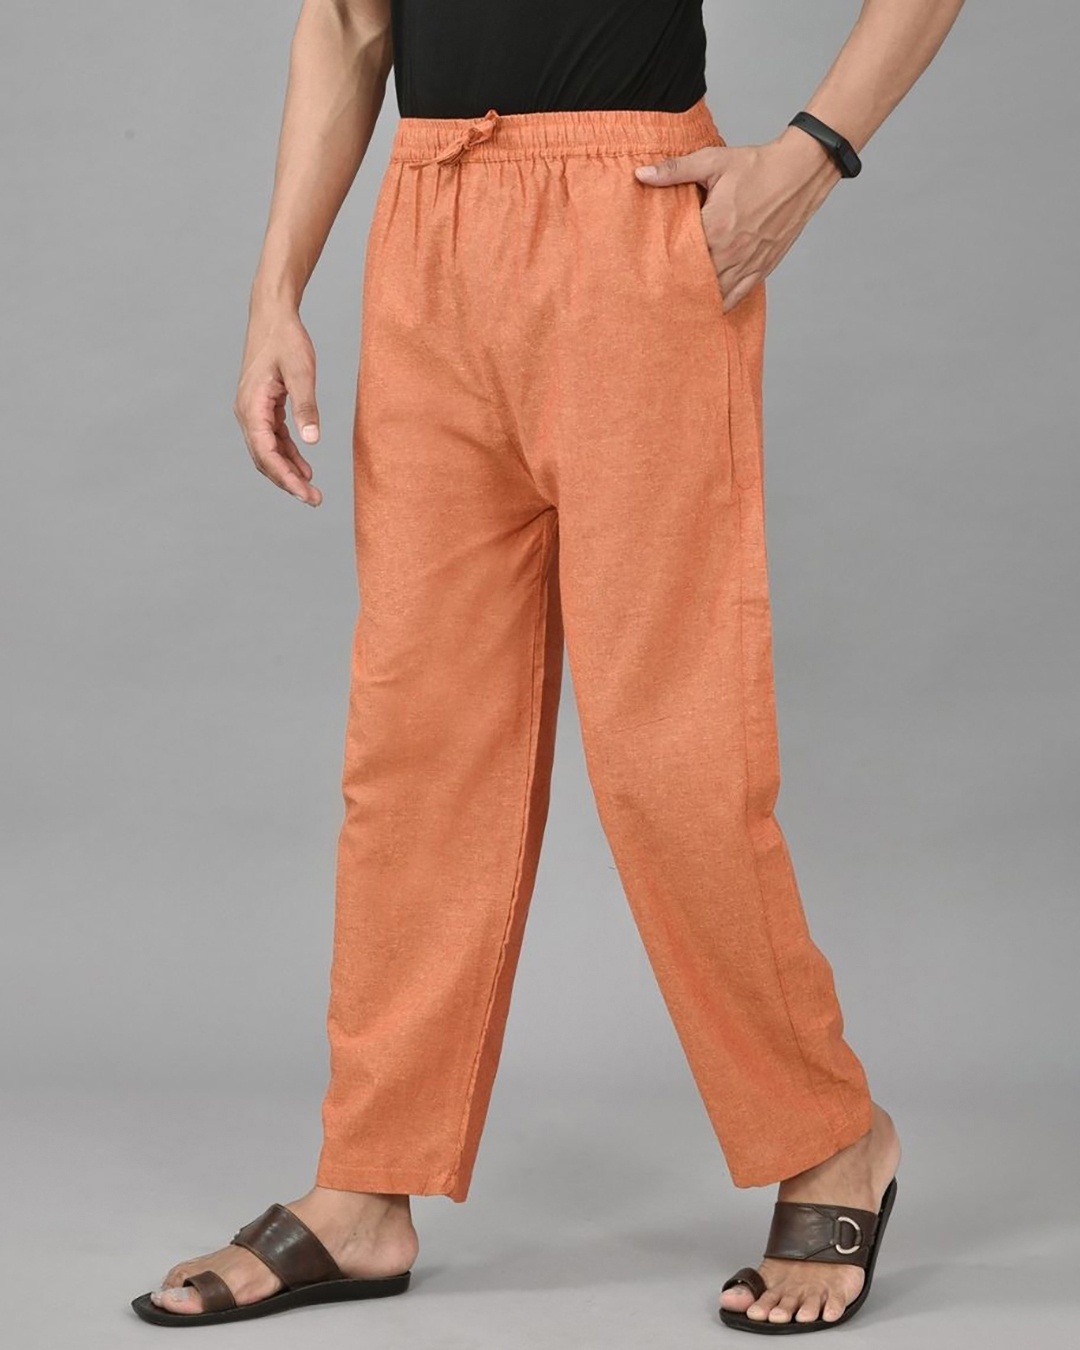 Orange Men's Leather Pants